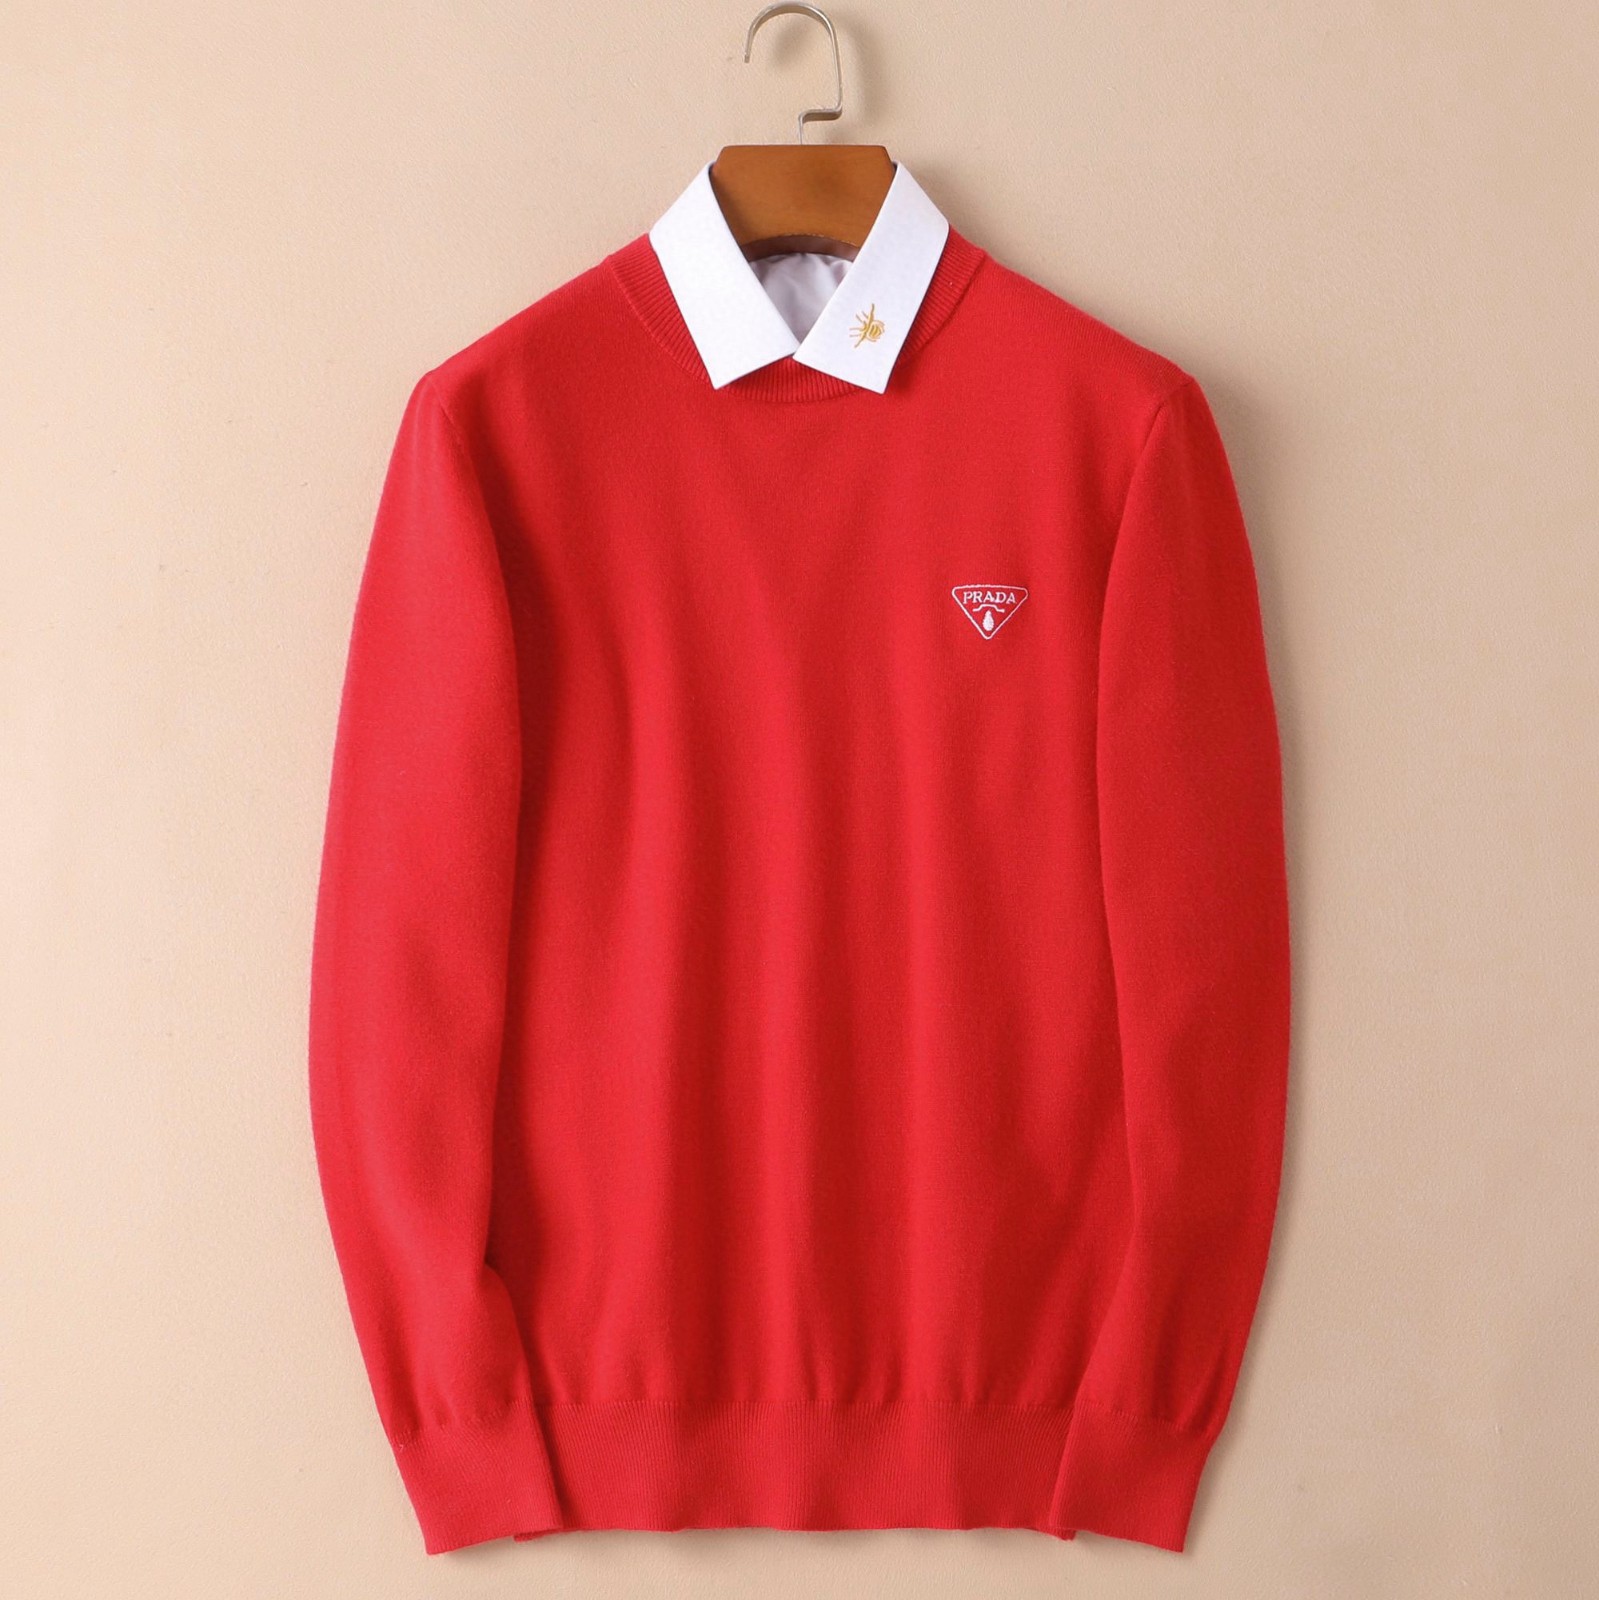 ベーシック 人気 赤 レッド プルオーバー 長袖 プラダ セーター メンズ コピー シンプル ストレッチ 柔らかい